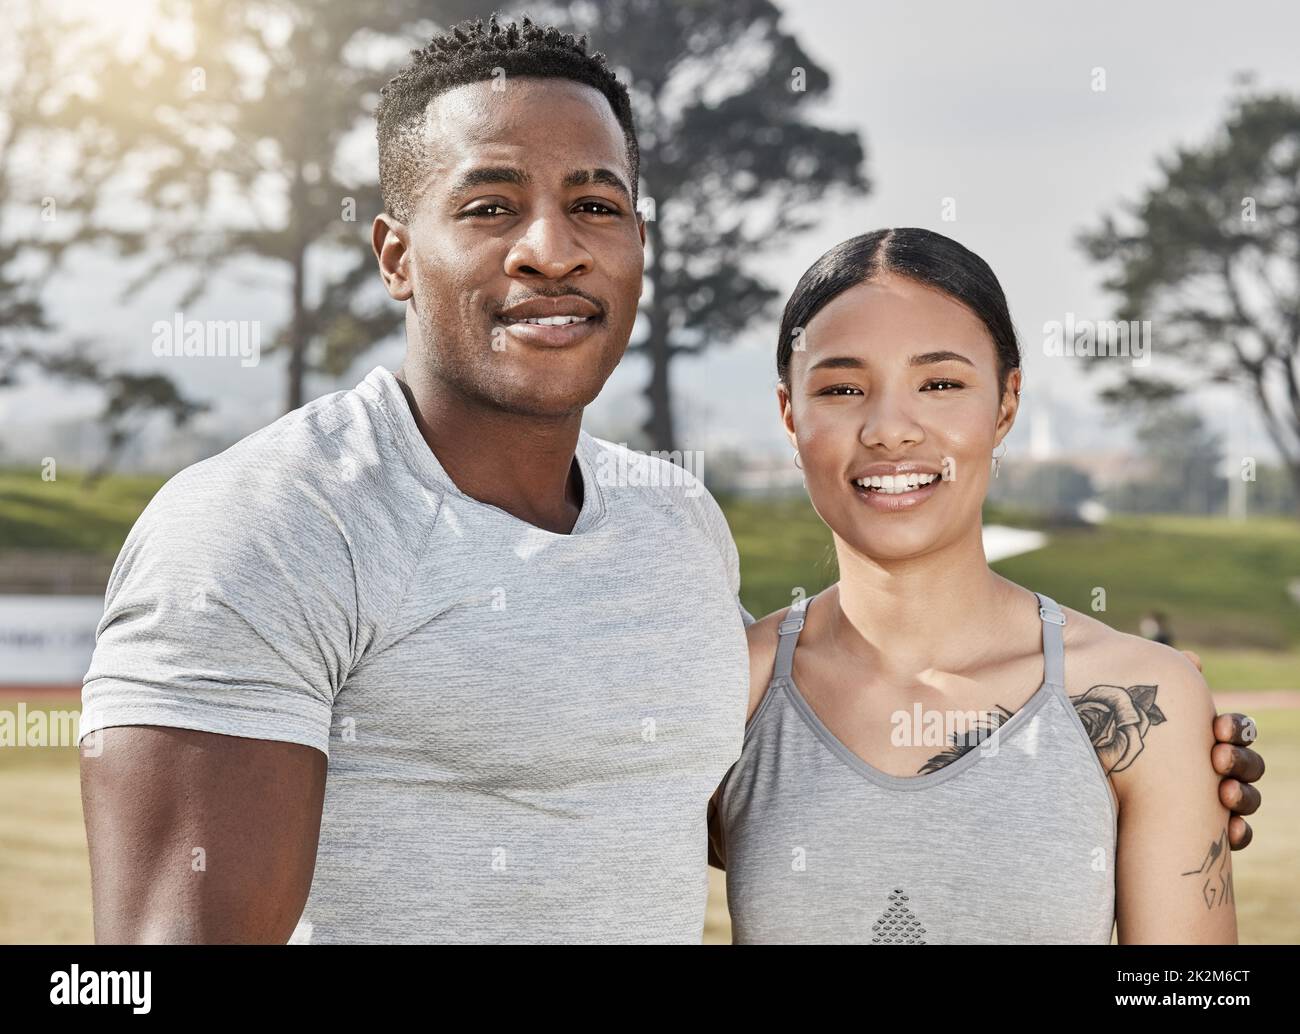 Mit dir an meiner Seite kann ich alles tun. Aufnahme eines athletischen Mannes und einer Frau, die draußen zusammen stehen. Stockfoto